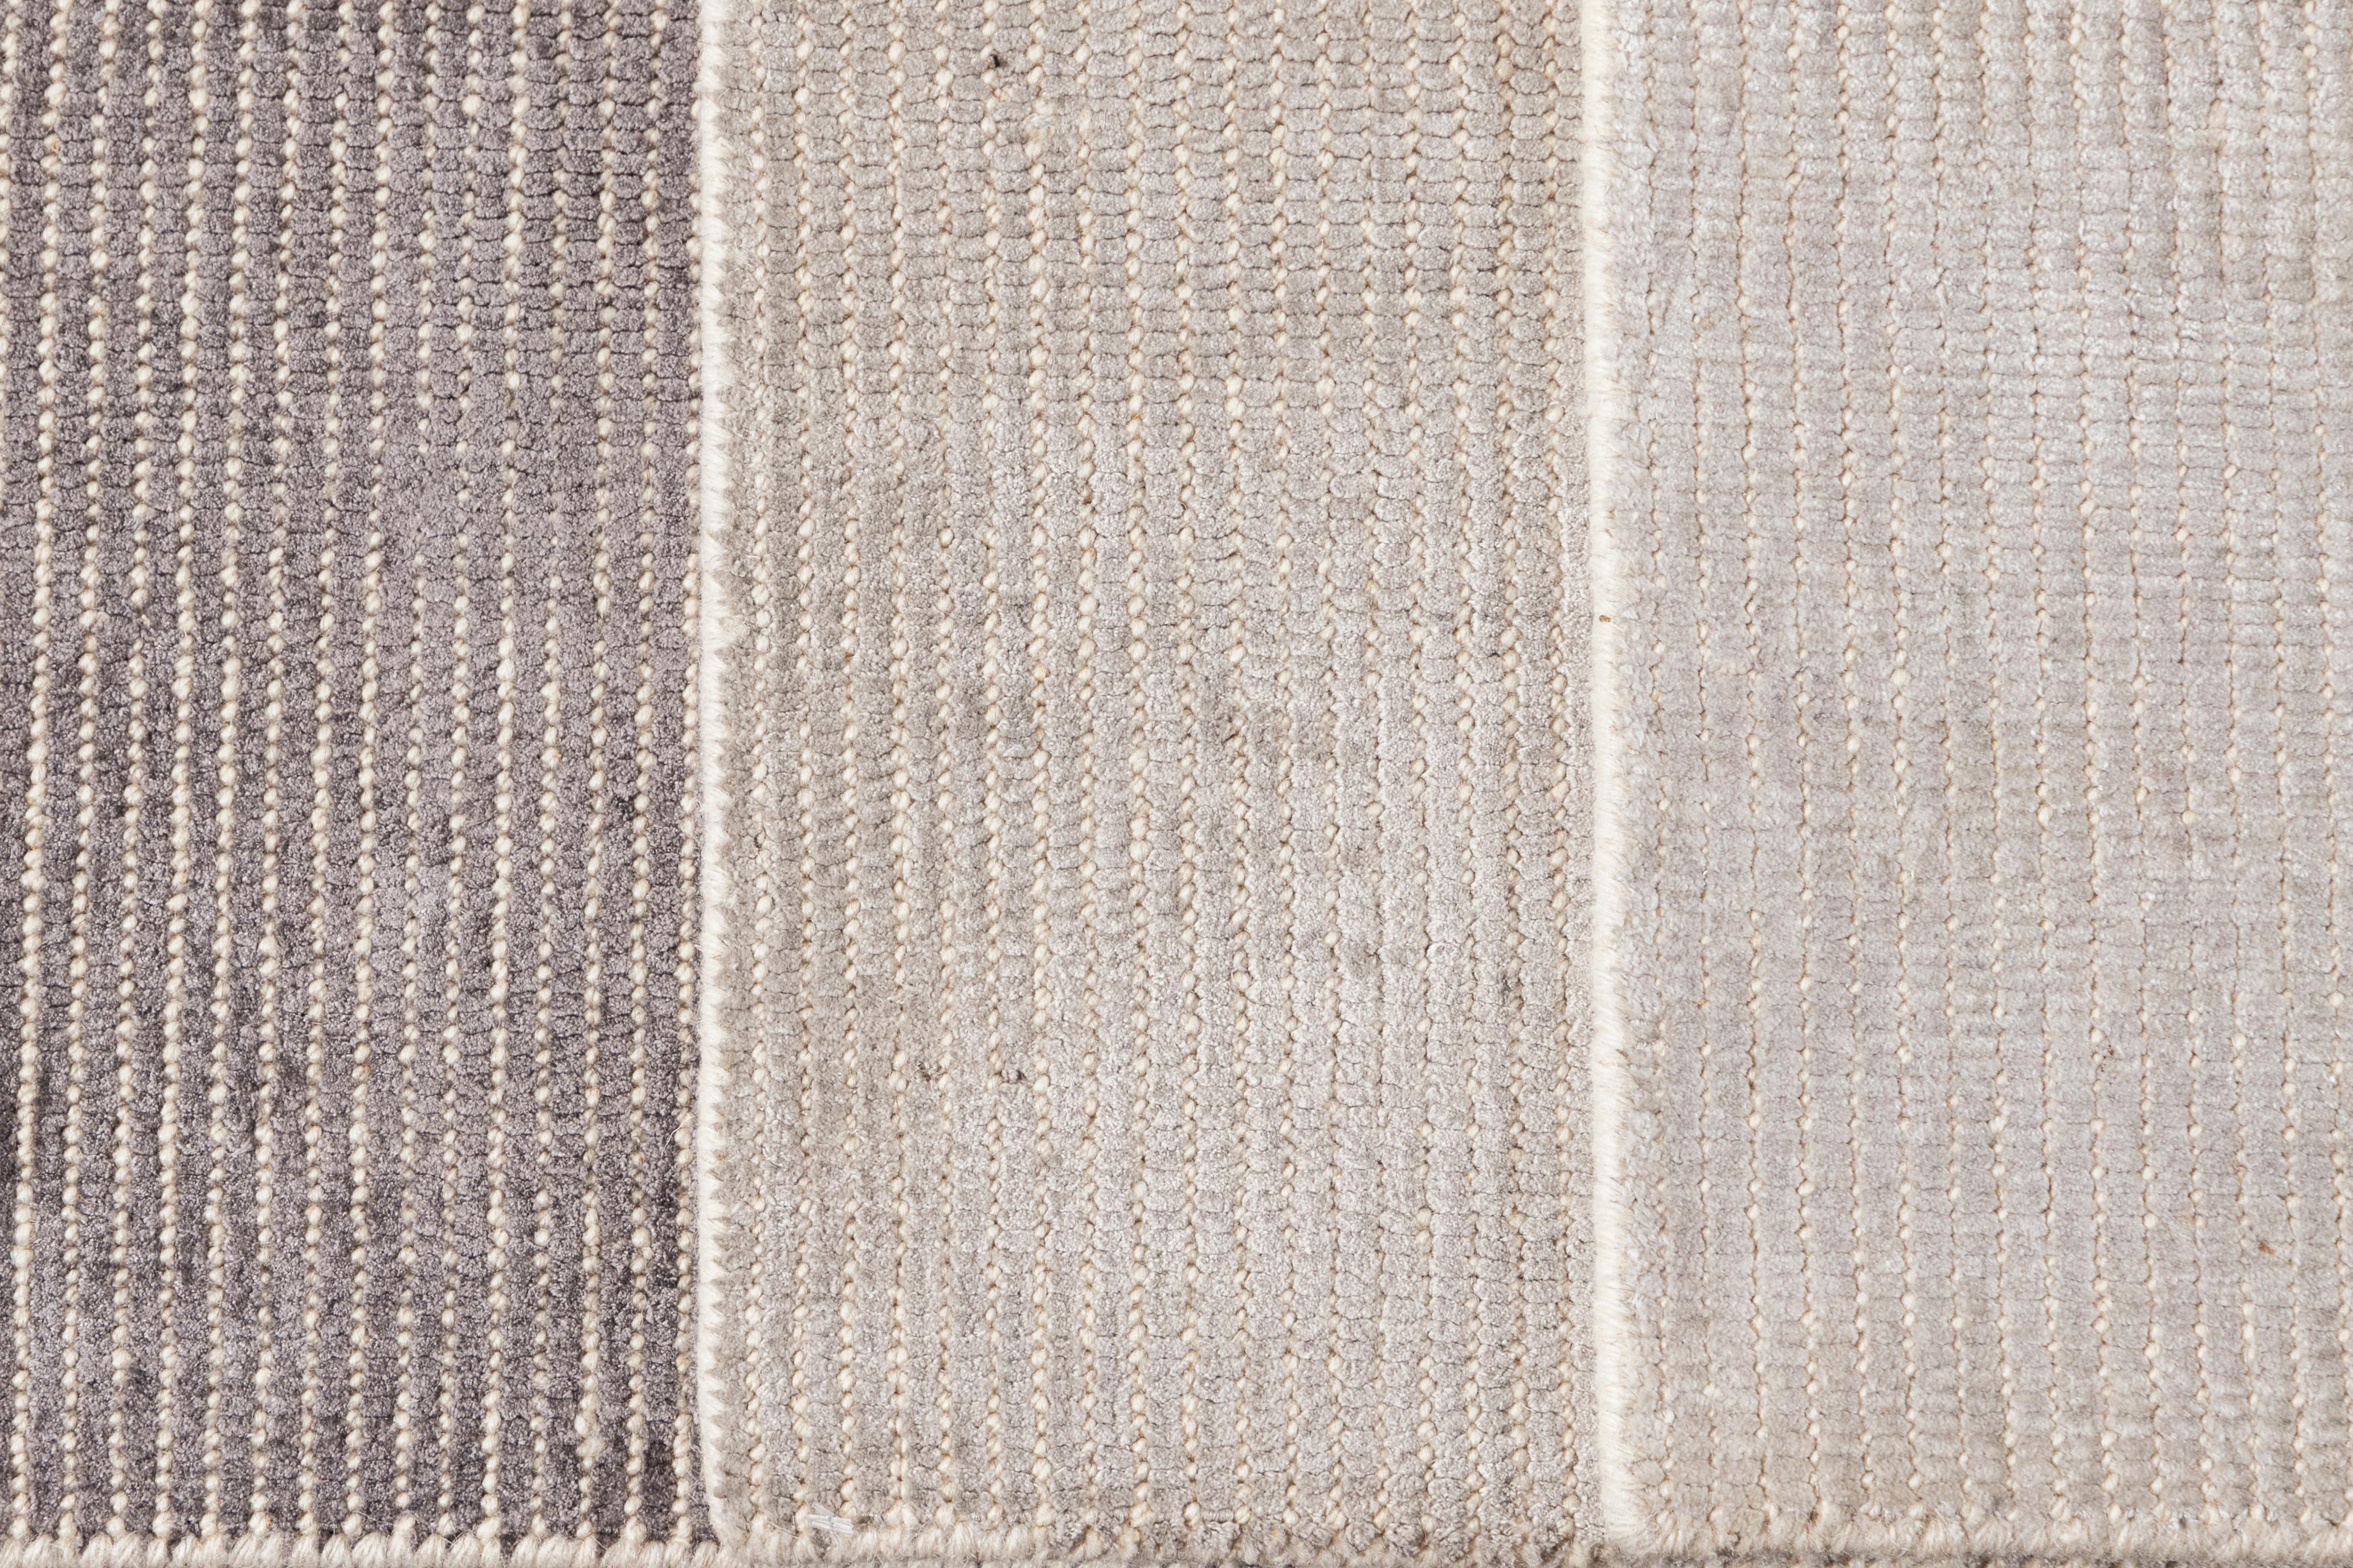 Individueller Boho-Teppich aus Wolle und Seide. Kundenspezifische Größen und Farben auf Bestellung.

Material: Wolle oder Bambusseide
Vorlaufzeit: Ungefähr 12 Wochen
Verfügbare Farben: über 100 Farbtöne.
Hergestellt in Indien.